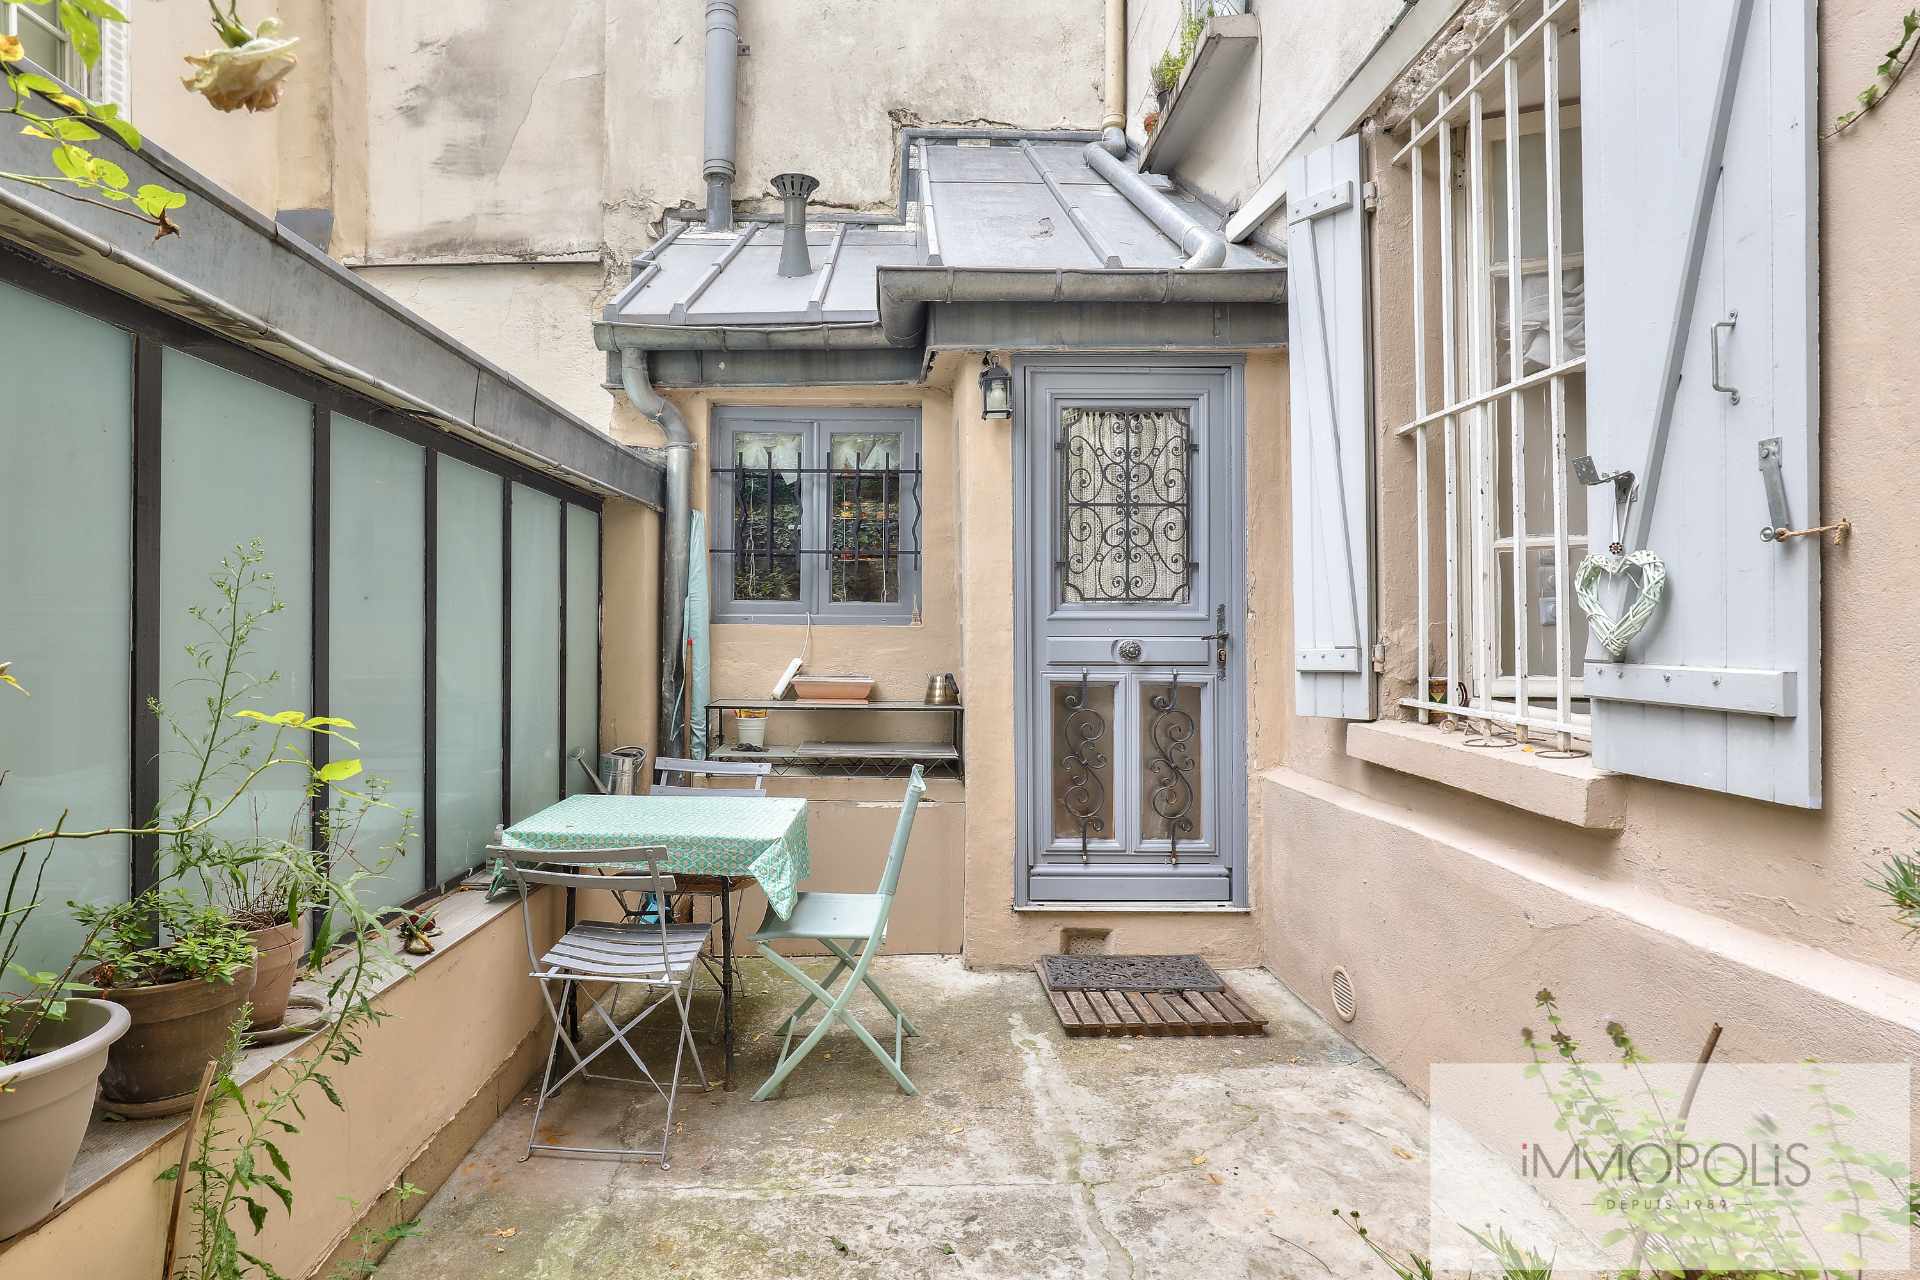 Montmartre, rue Gabrielle, magnifique 2 pièces entièrement rénové avec pierres, briques et poutres apparentes : comme une maison ! 3